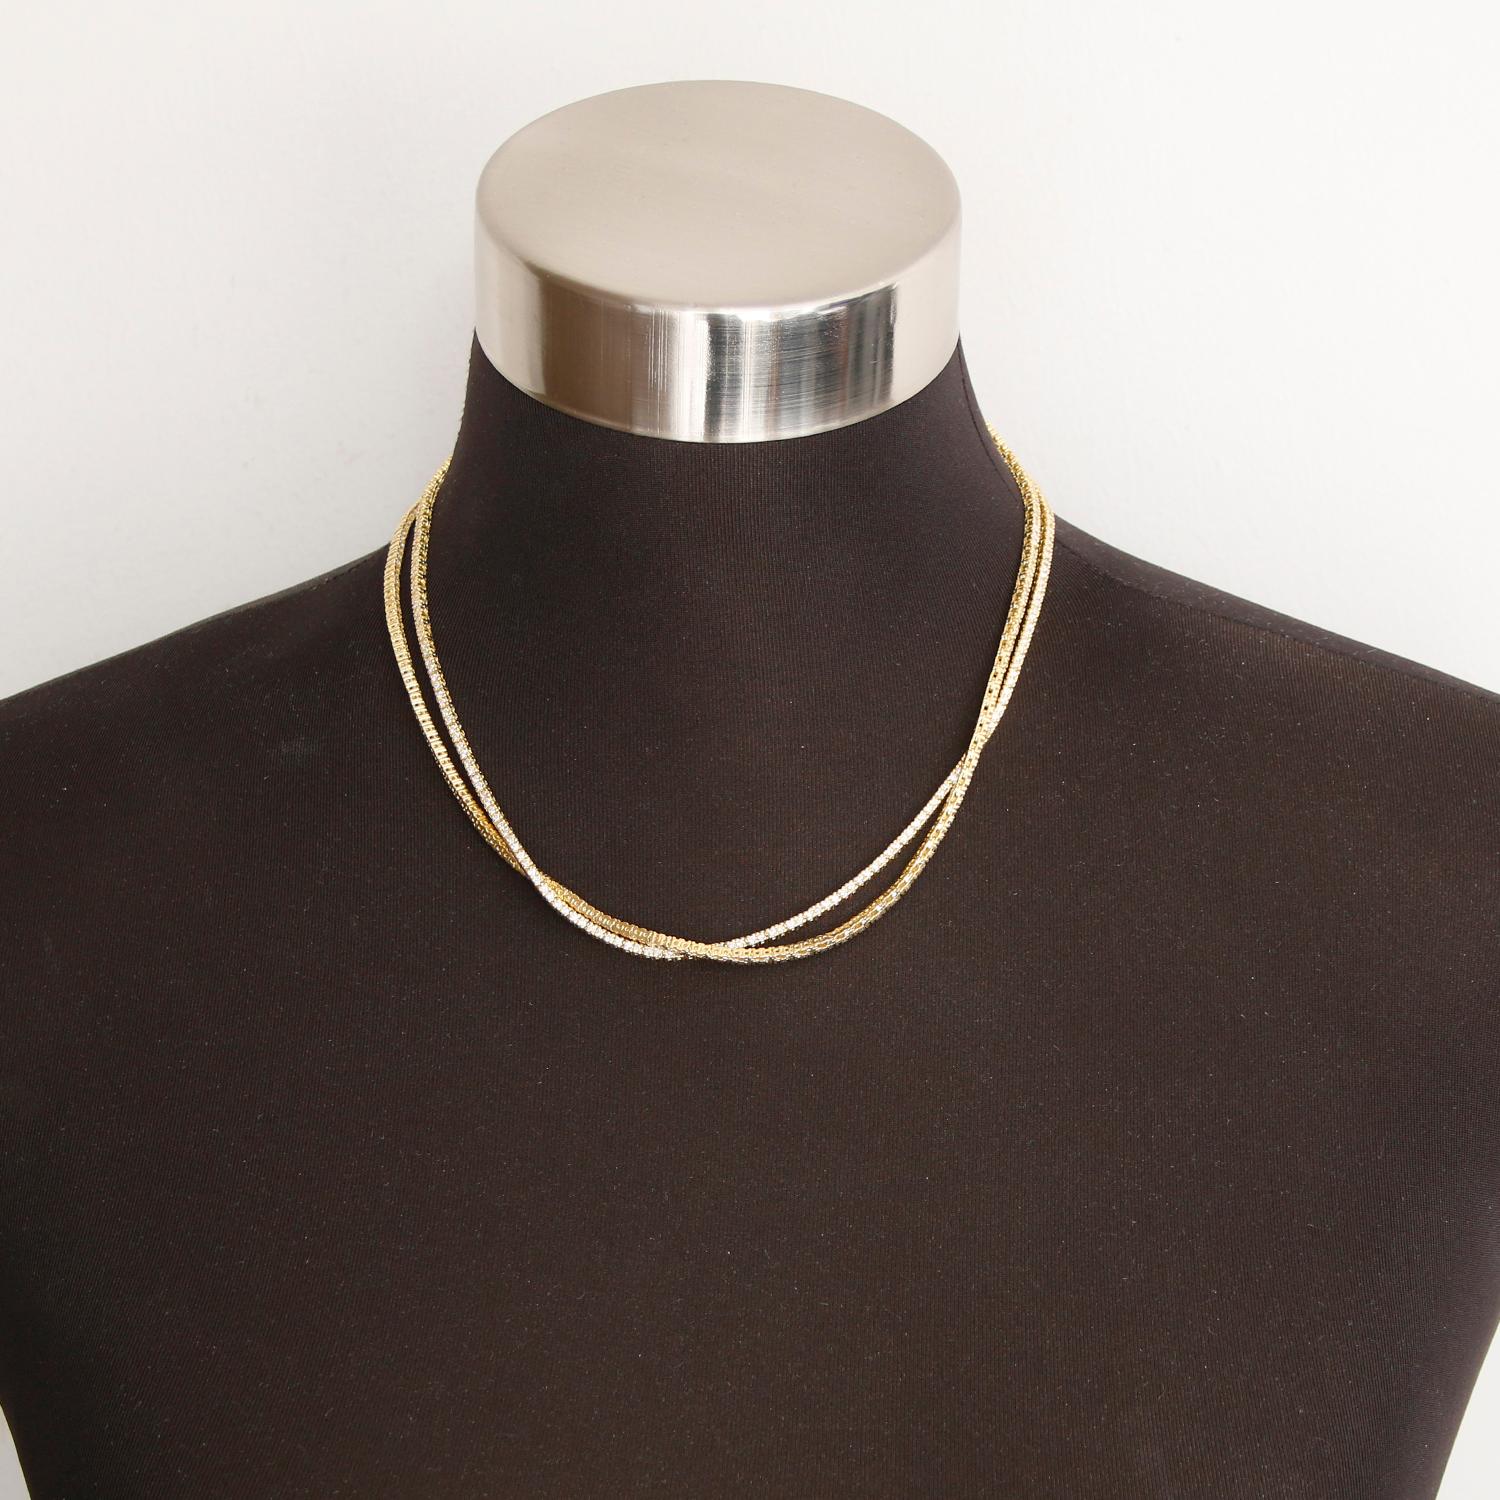 18K Gelbgold 7.27cts Gerade Linie Diamant-Halskette - 36 Zoll benutzerdefinierte gerade Linie Diamant-Halskette. Gesamtgewicht 7,27 cts Gewicht- Farbe G-H. Klarheit VS. Kann als Doppelstrang oder als Einzelstrang getragen werden.